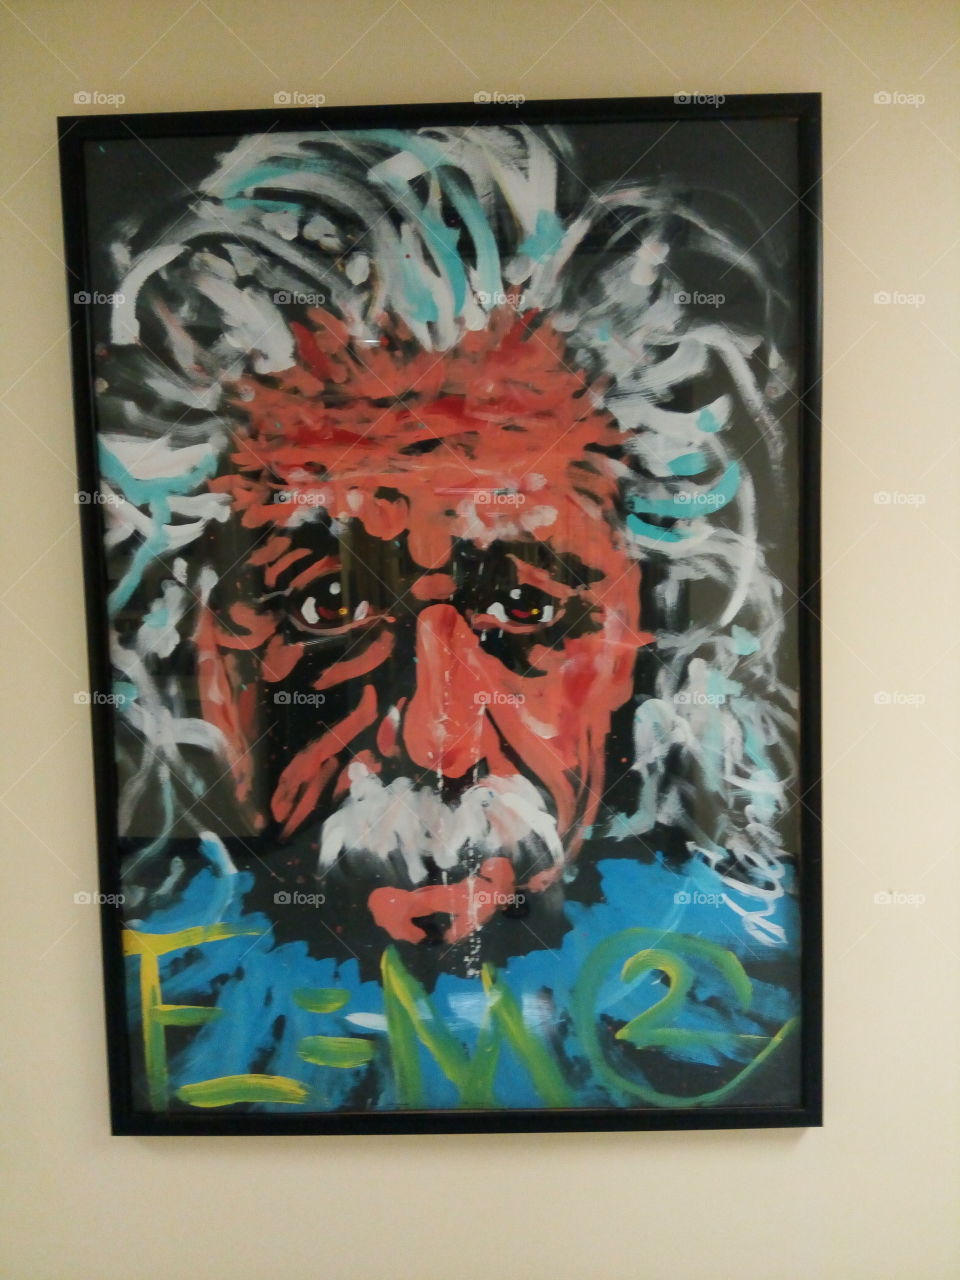 painting of Albert Einstein